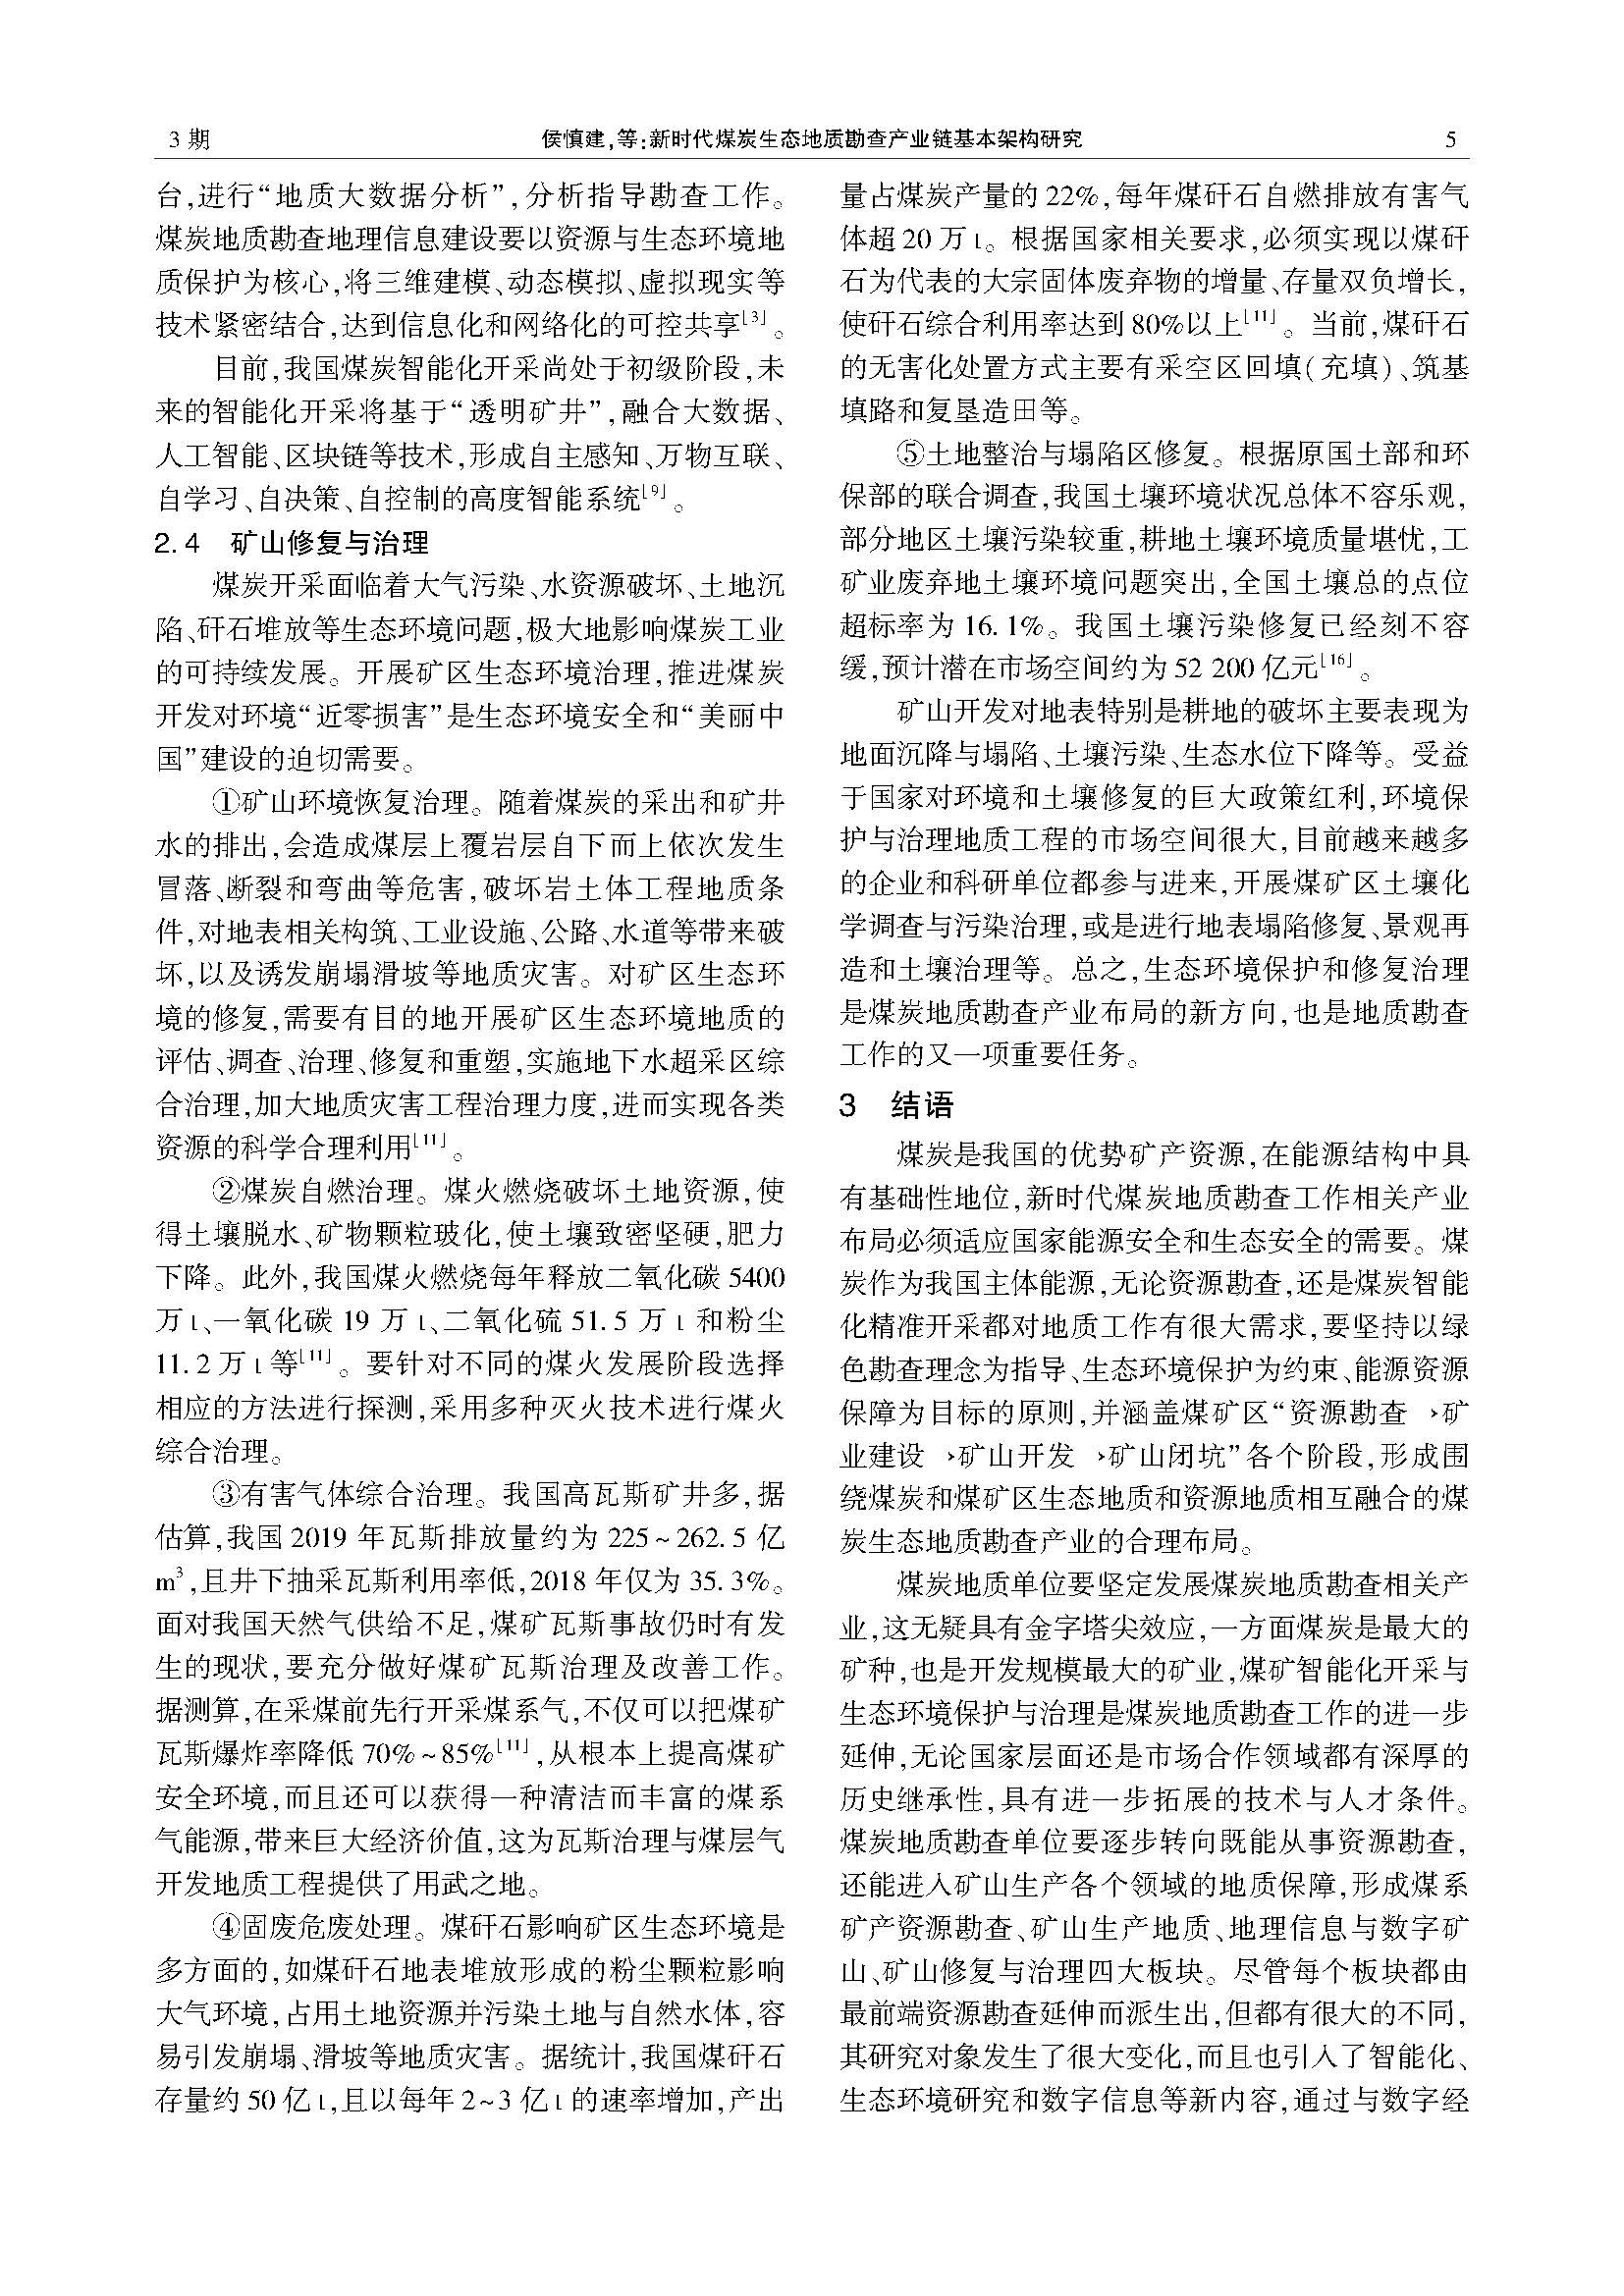 中国煤炭地质2020年第3期-侯慎建0603(1)(1)_页面_5.jpg